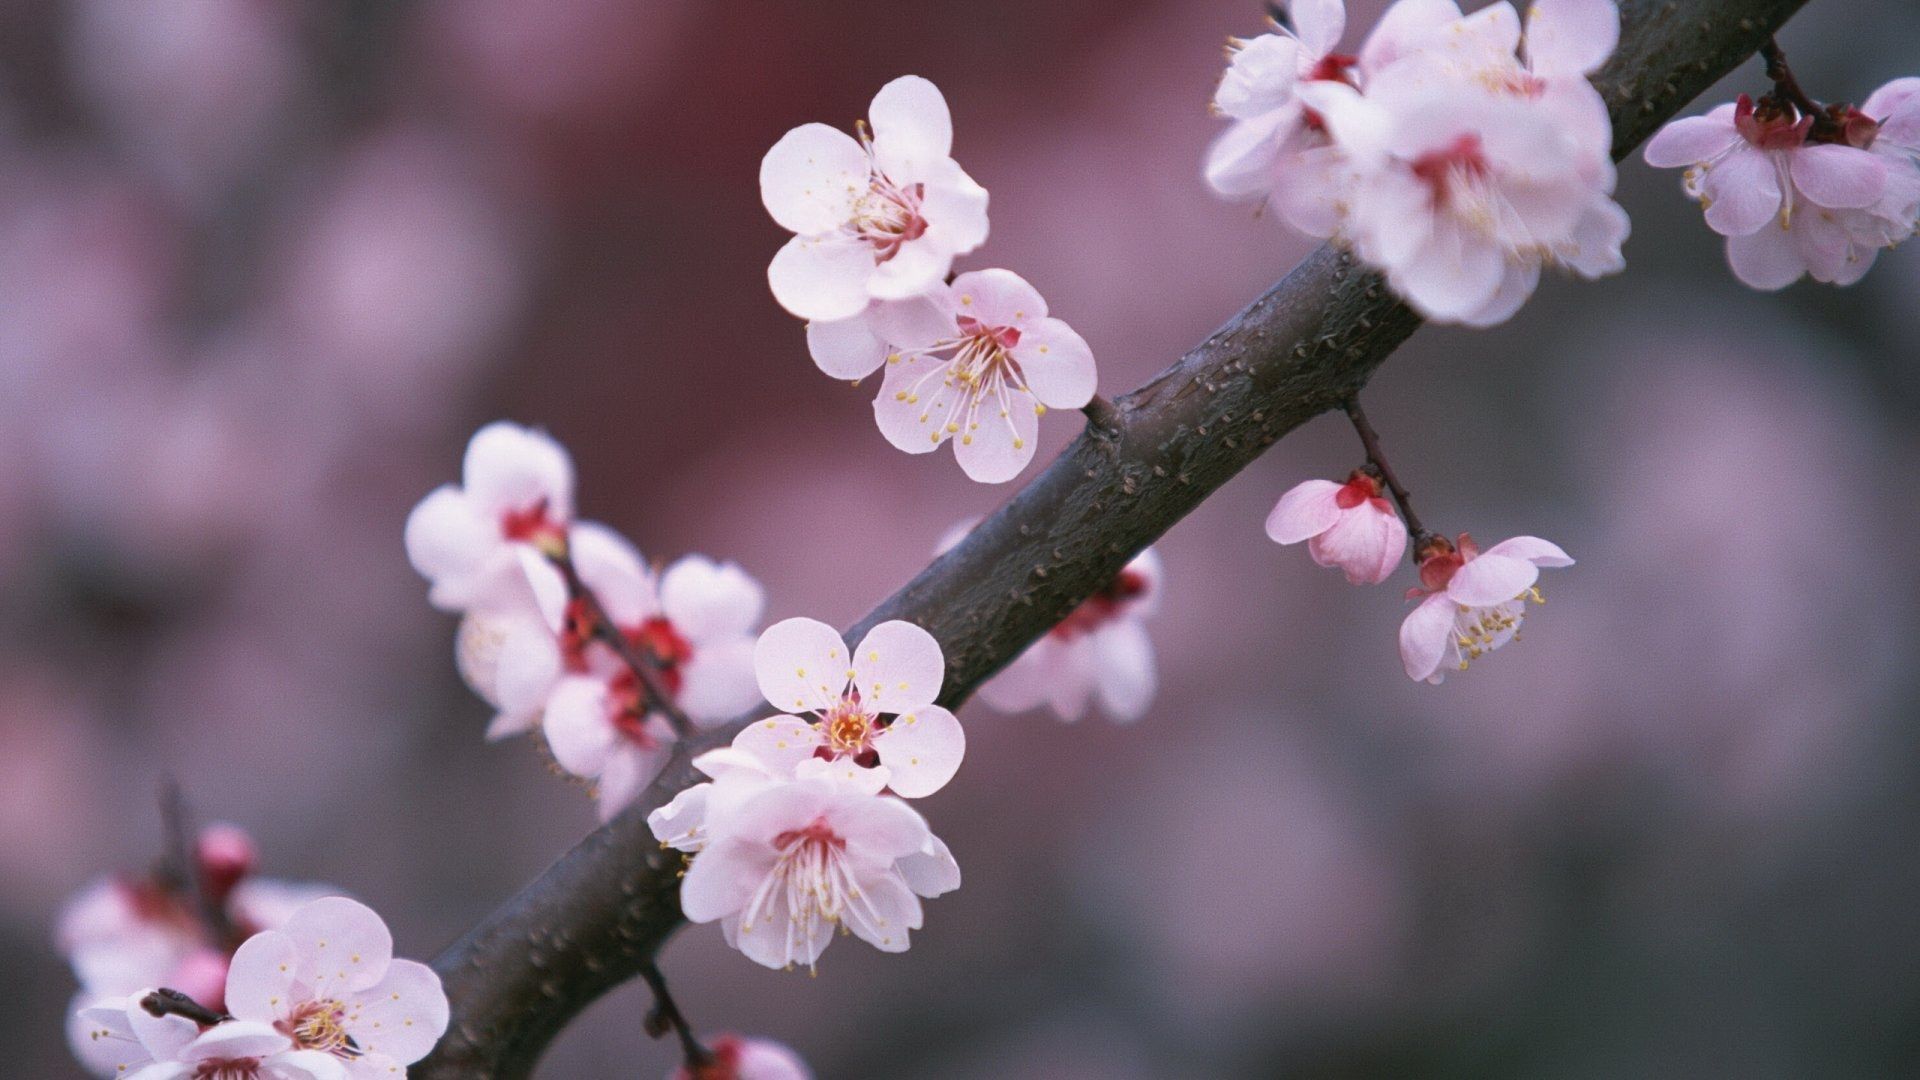 عکس منحصر به فرد و دیدنی از شکوفه های صورتی و سفید 